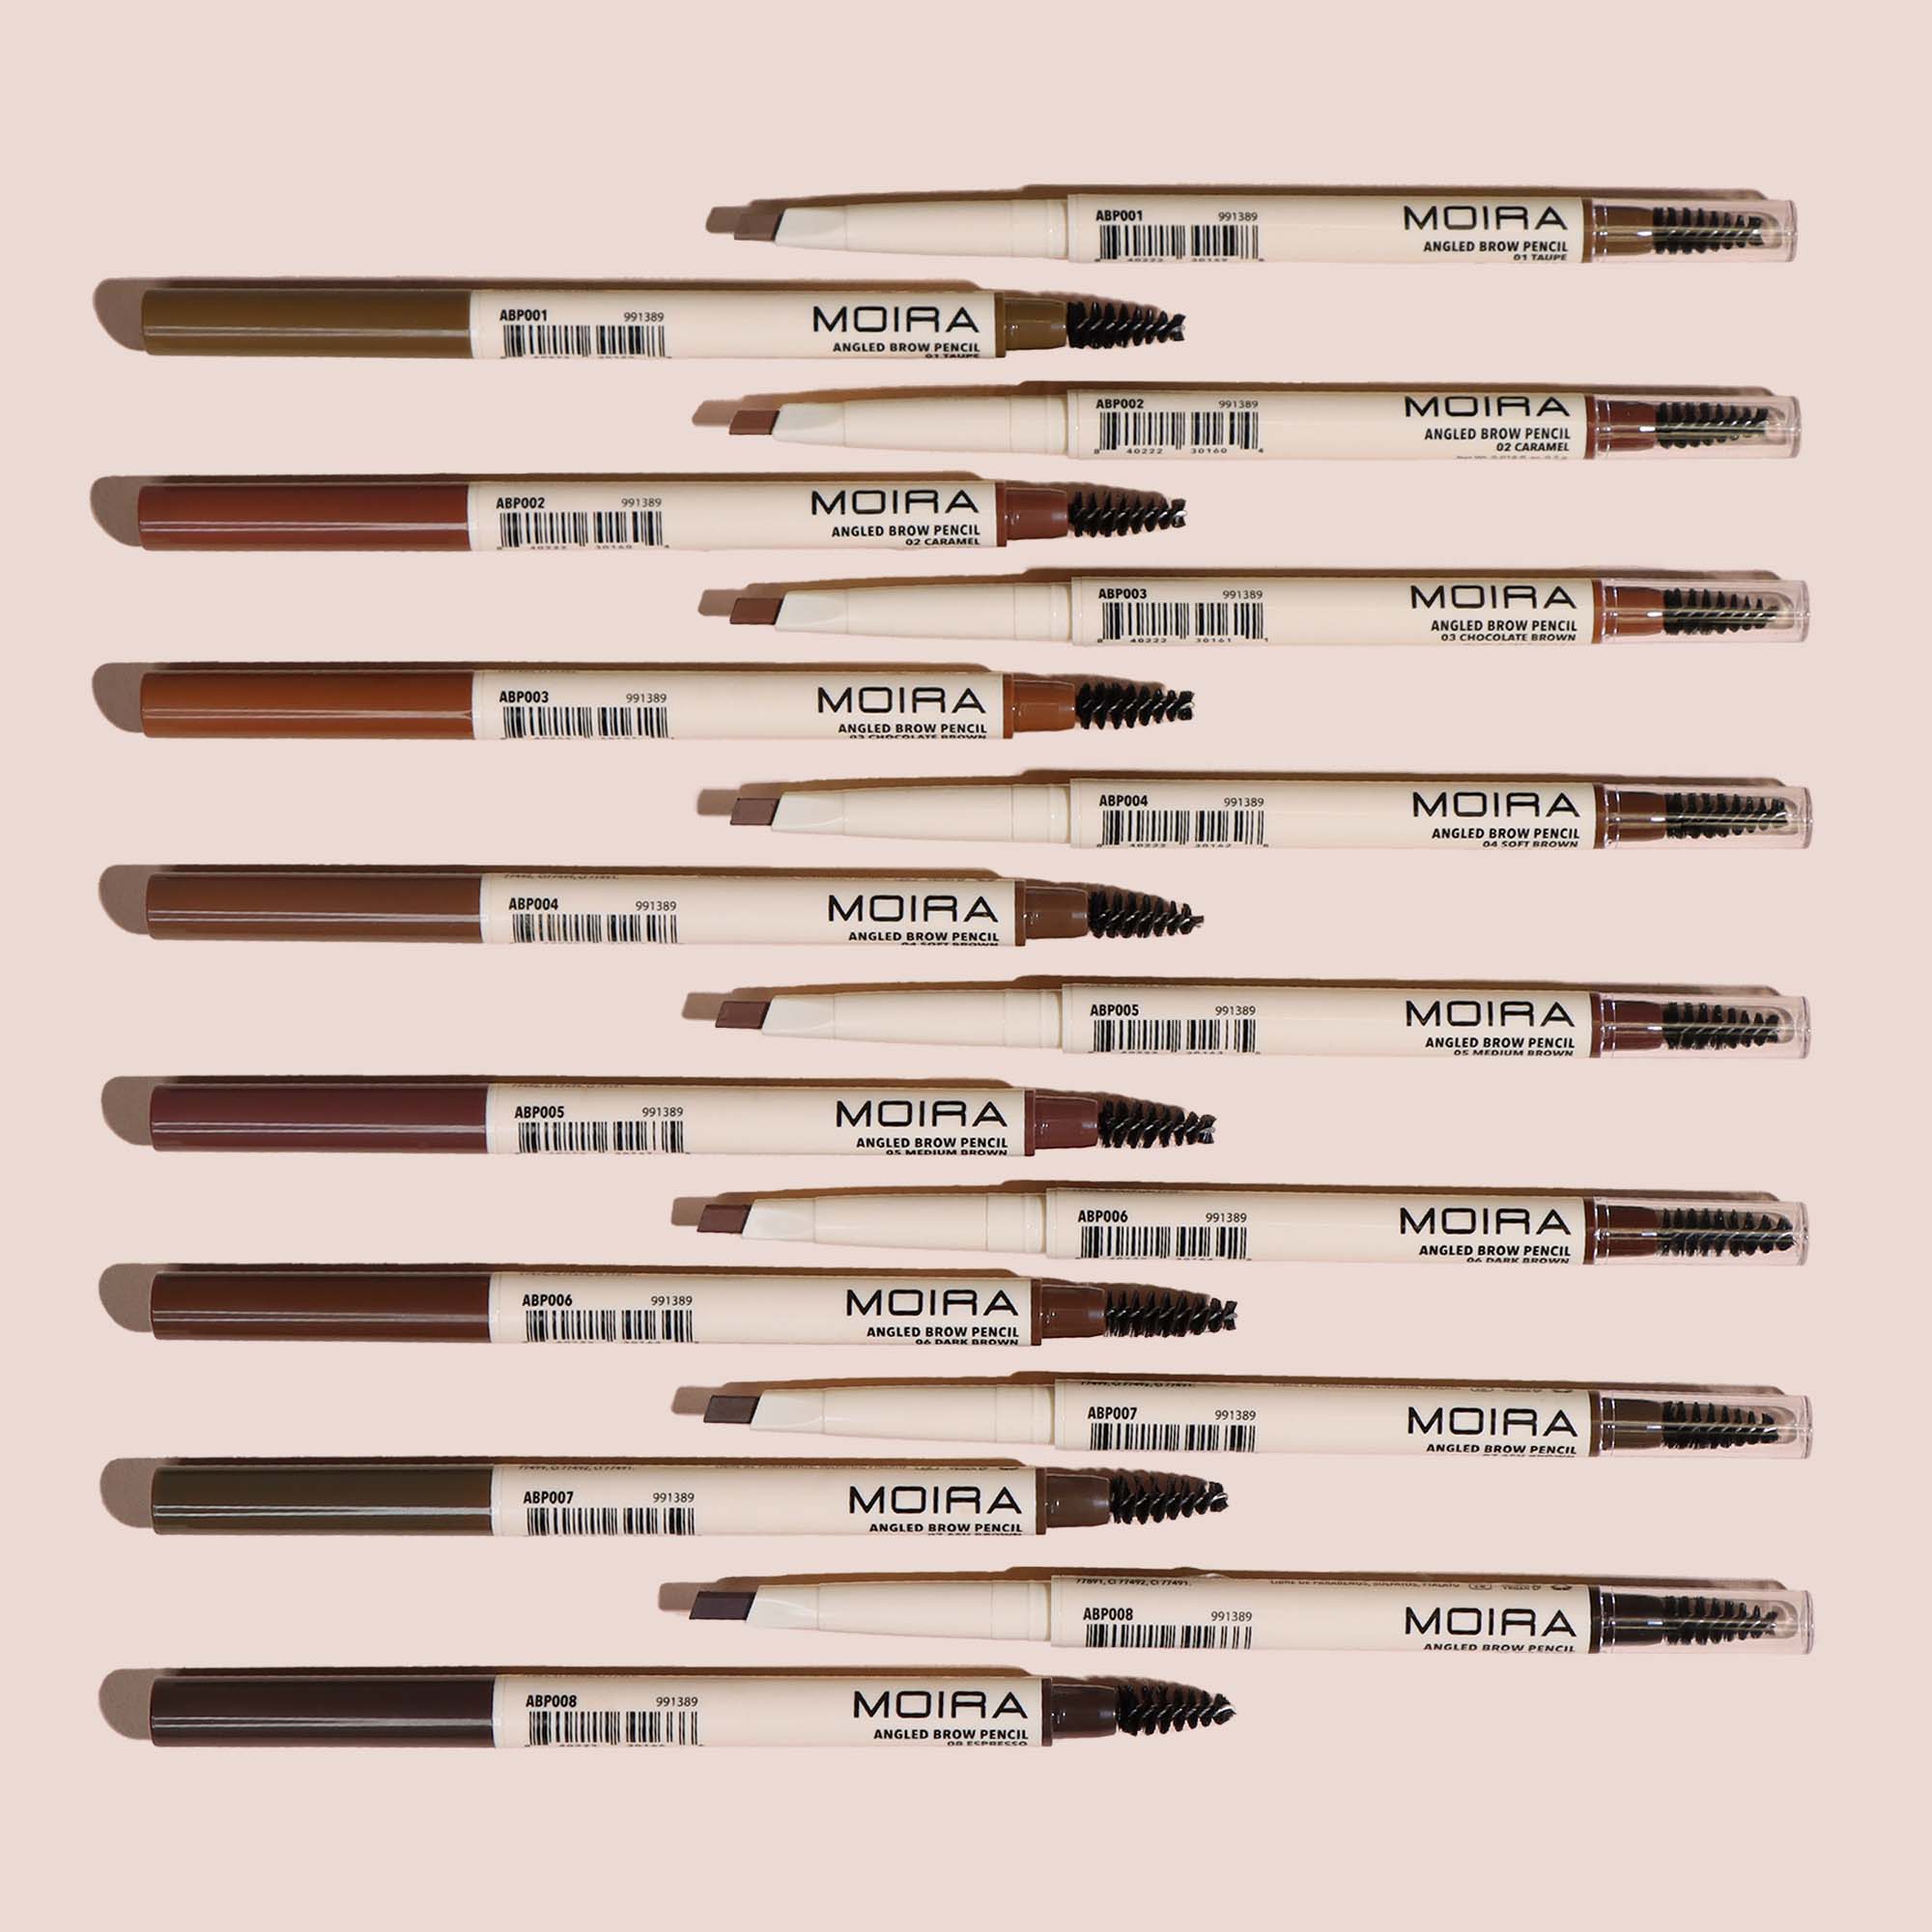 Angled Brow Pencil (002, Caramel)